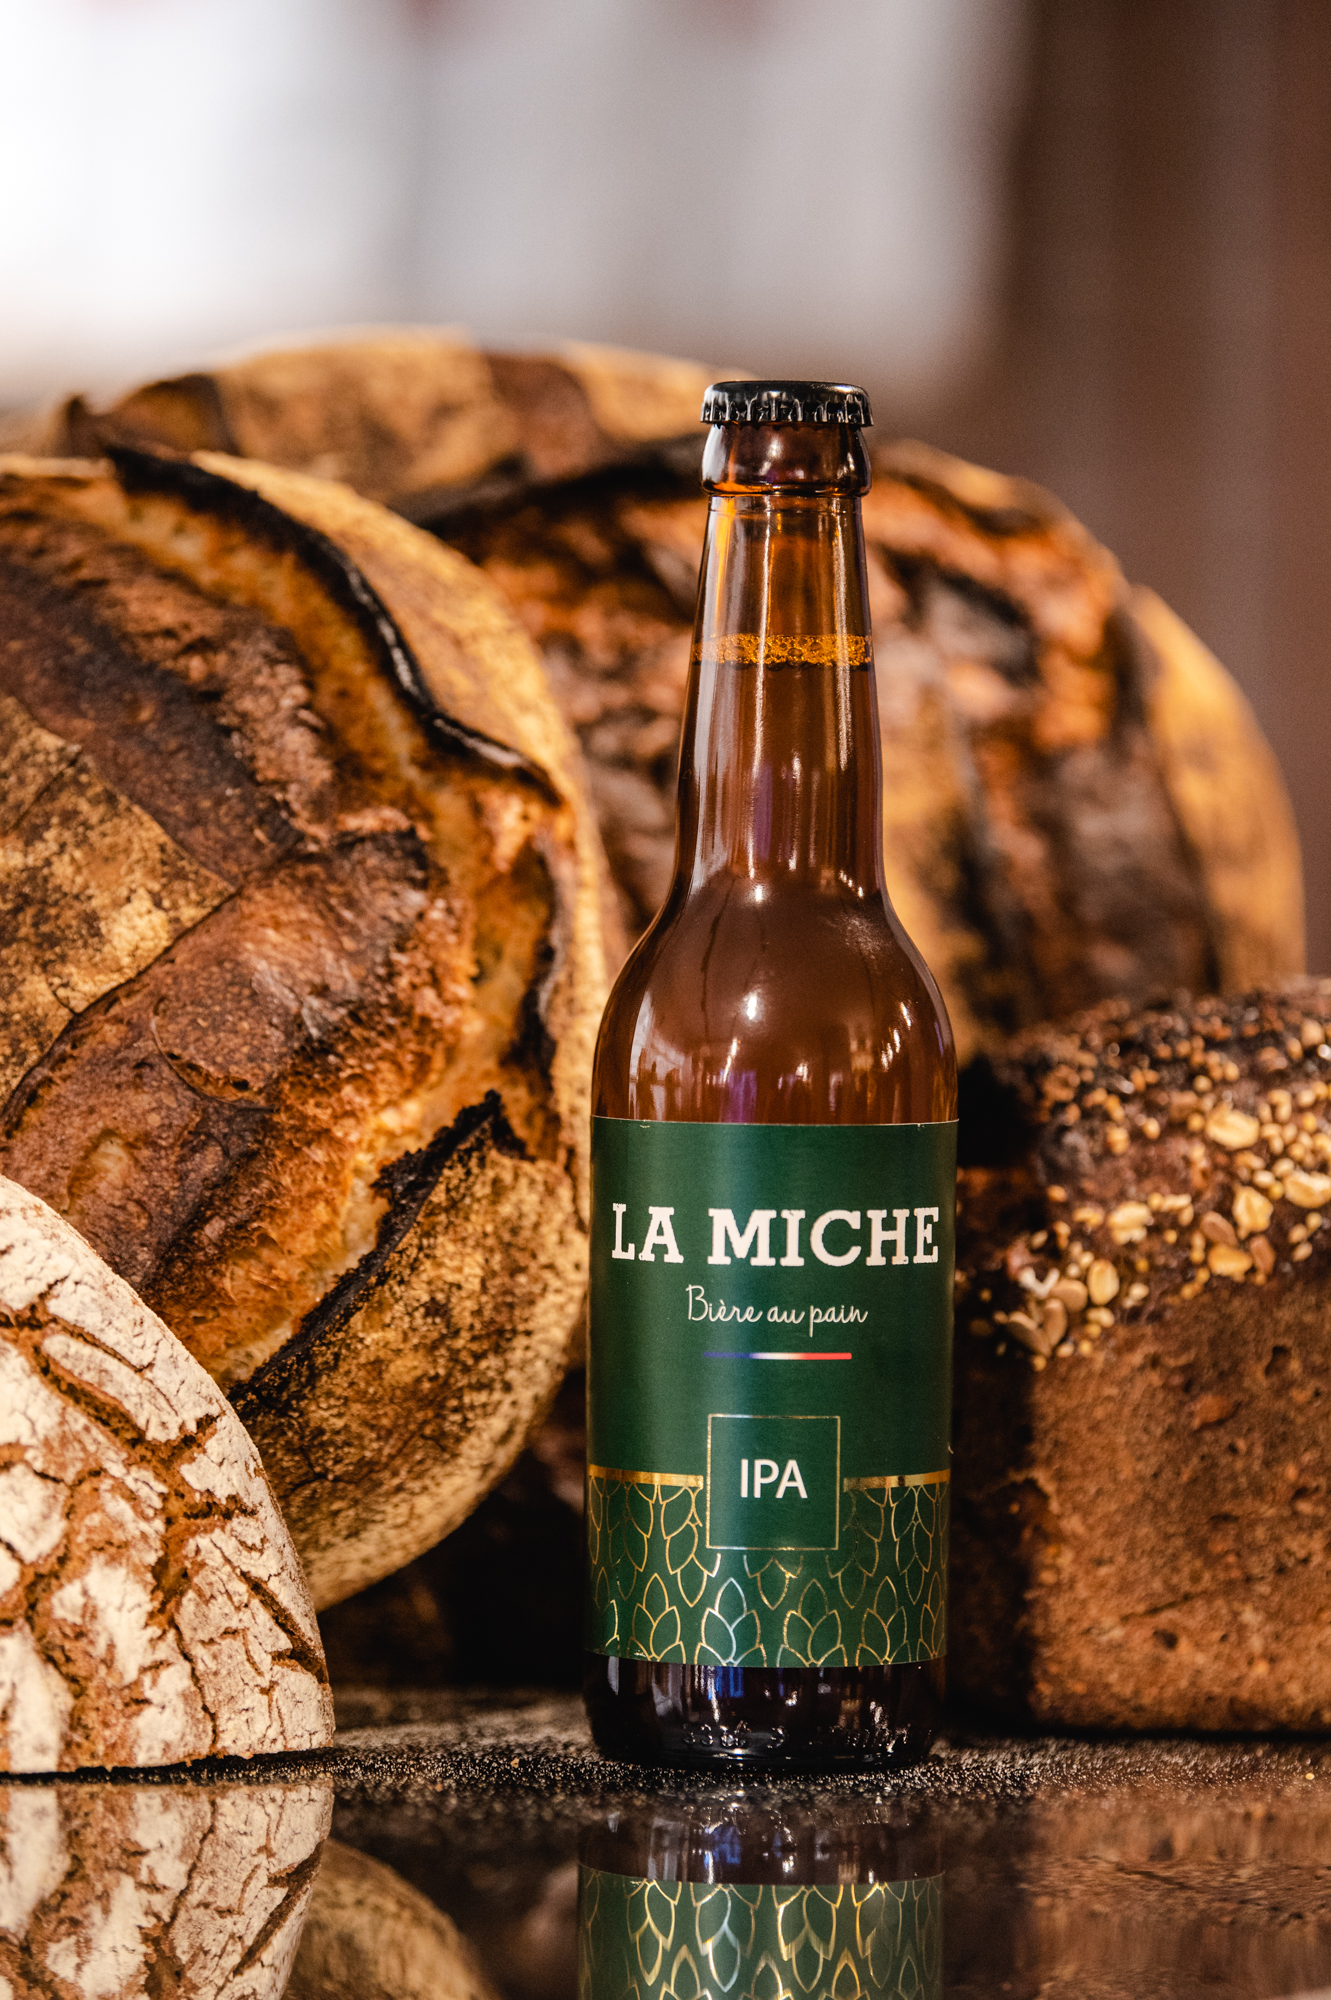 2021 SSV 55LaMiche 35 - La Miche lance sa bière IPA réalisée à partir d’invendus de pain